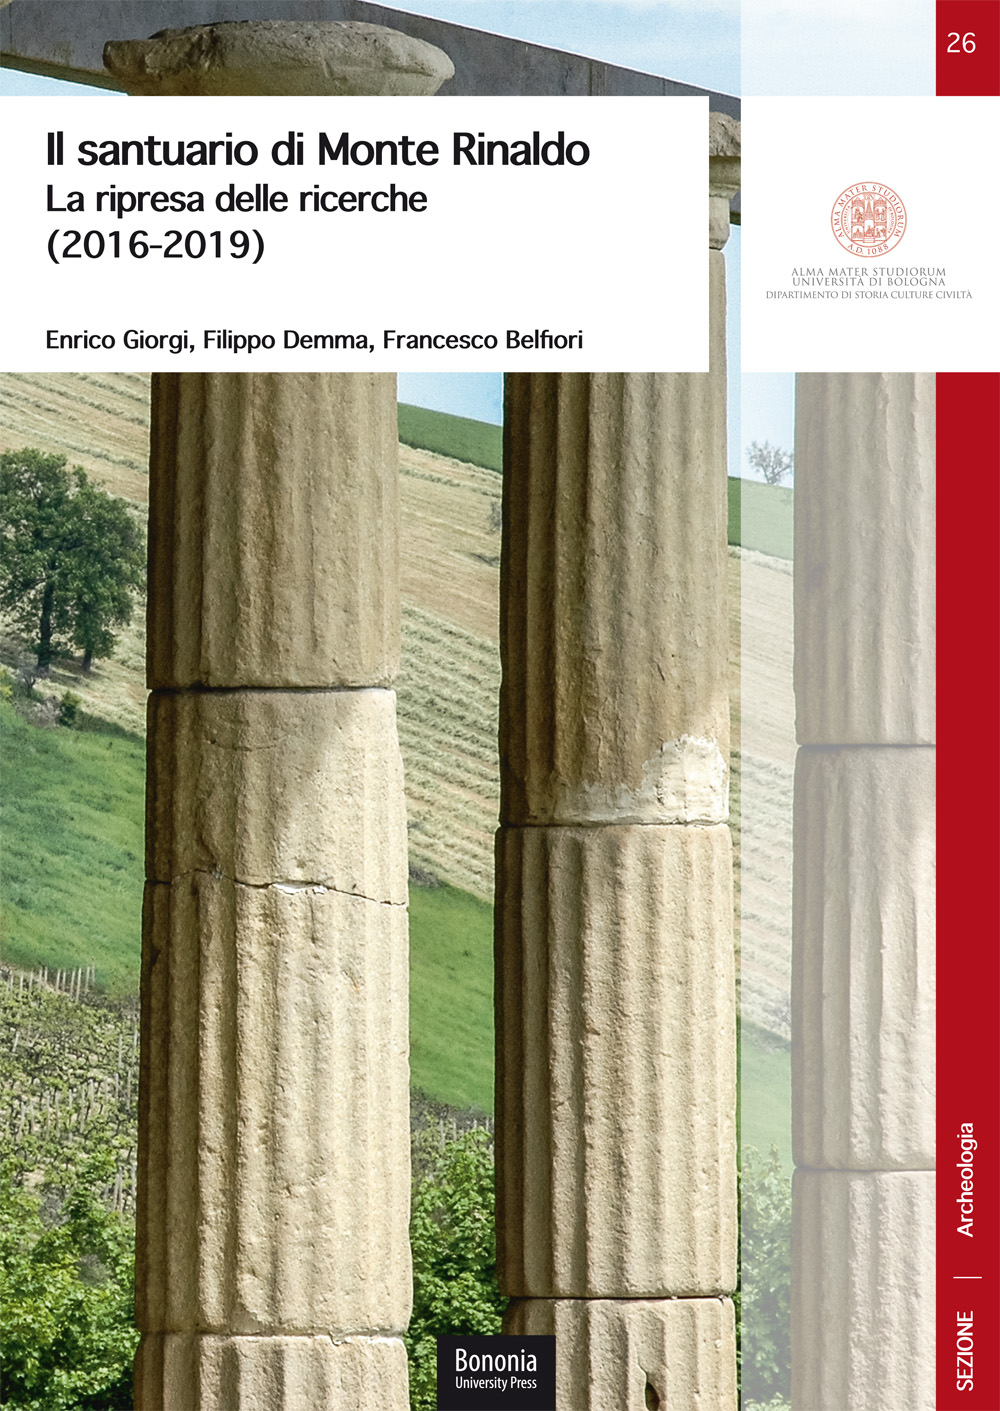 26. Il santuario di Monte Rinaldo - Bologna University Press